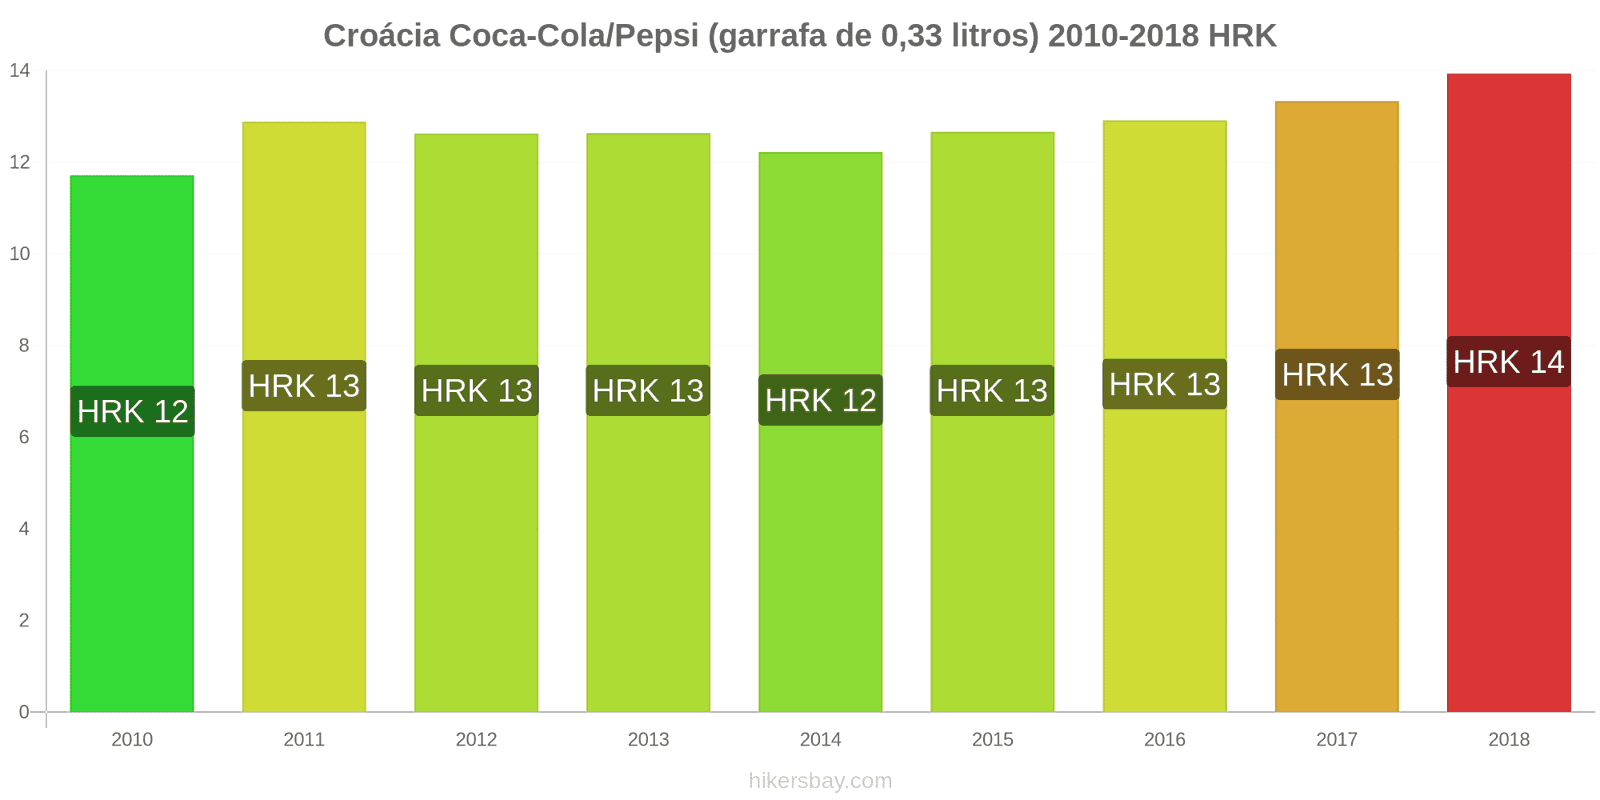 Croácia mudanças de preços Coca-Cola/Pepsi (garrafa de 0.33 litros) hikersbay.com